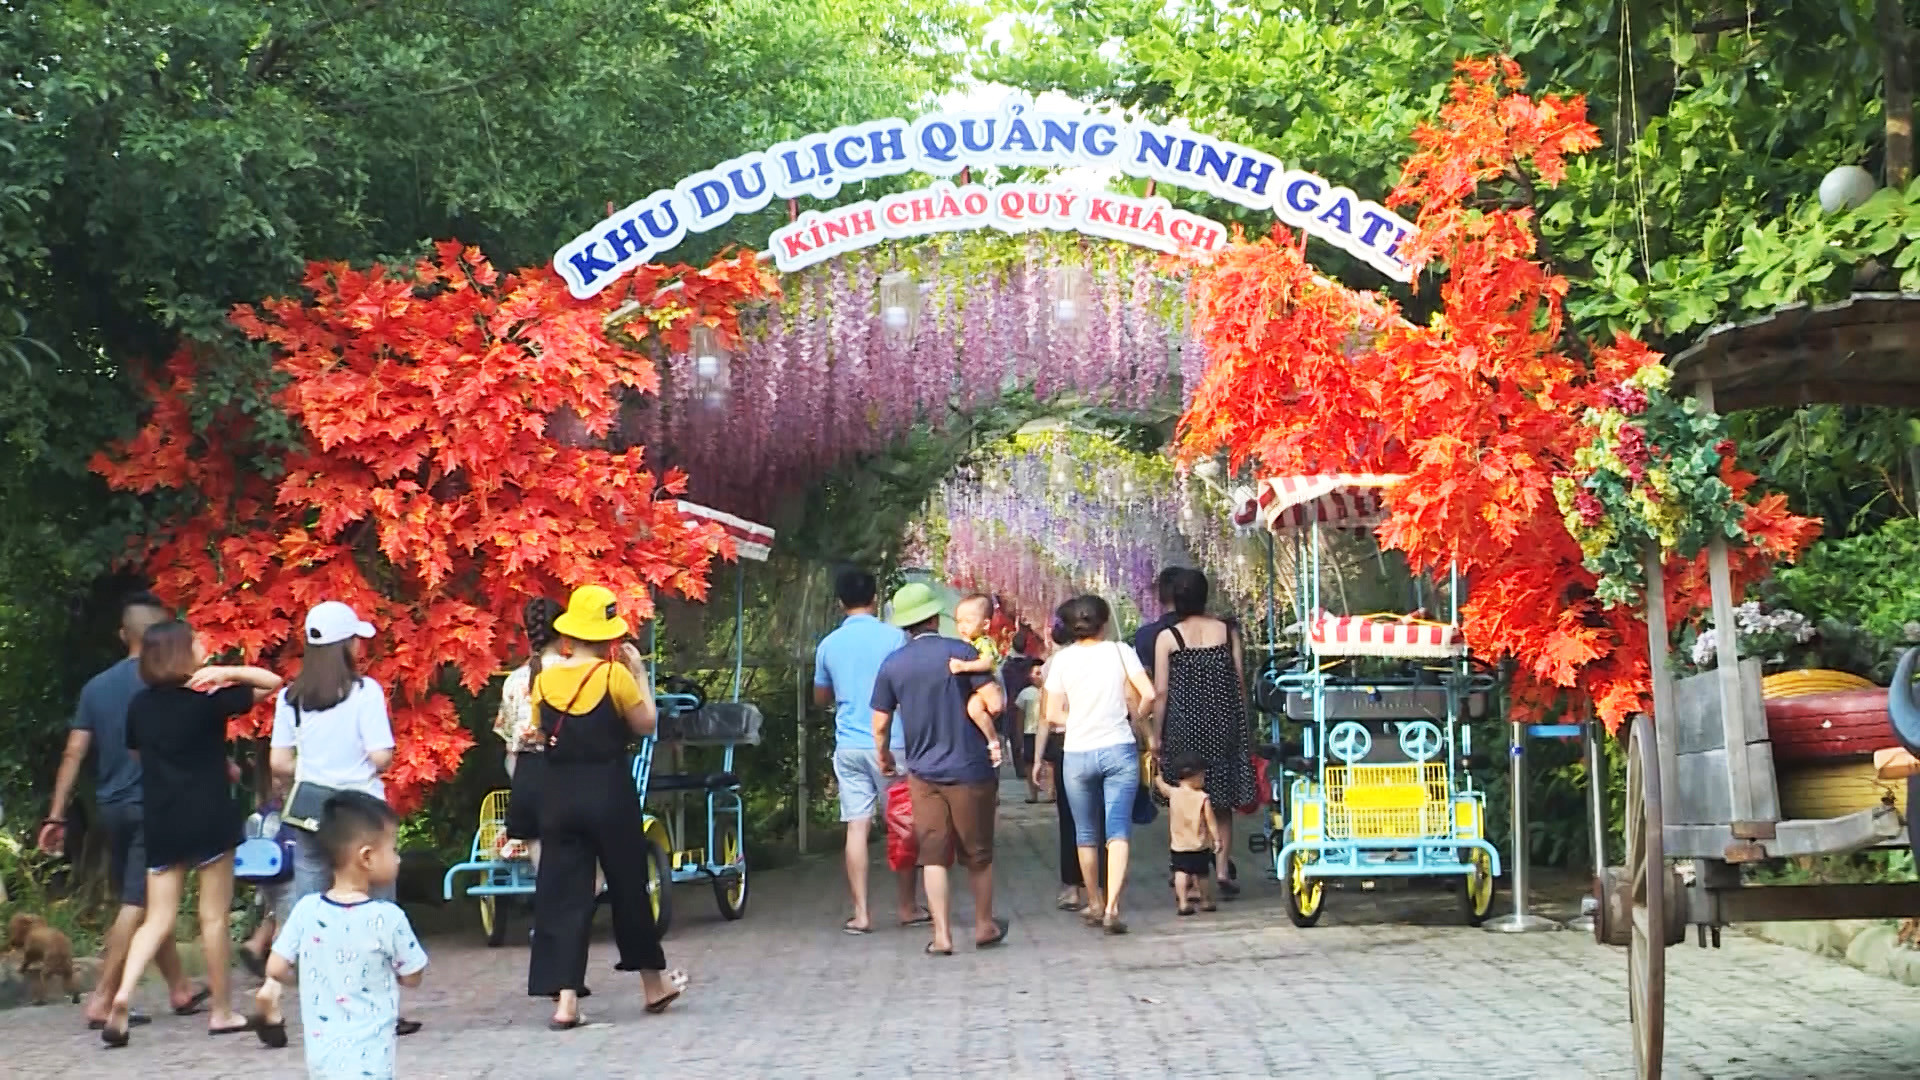 Khu Du lịch Quảng Ninh Gate cũng là địa điểm thu hút đông đảo du khách tới tham quan.